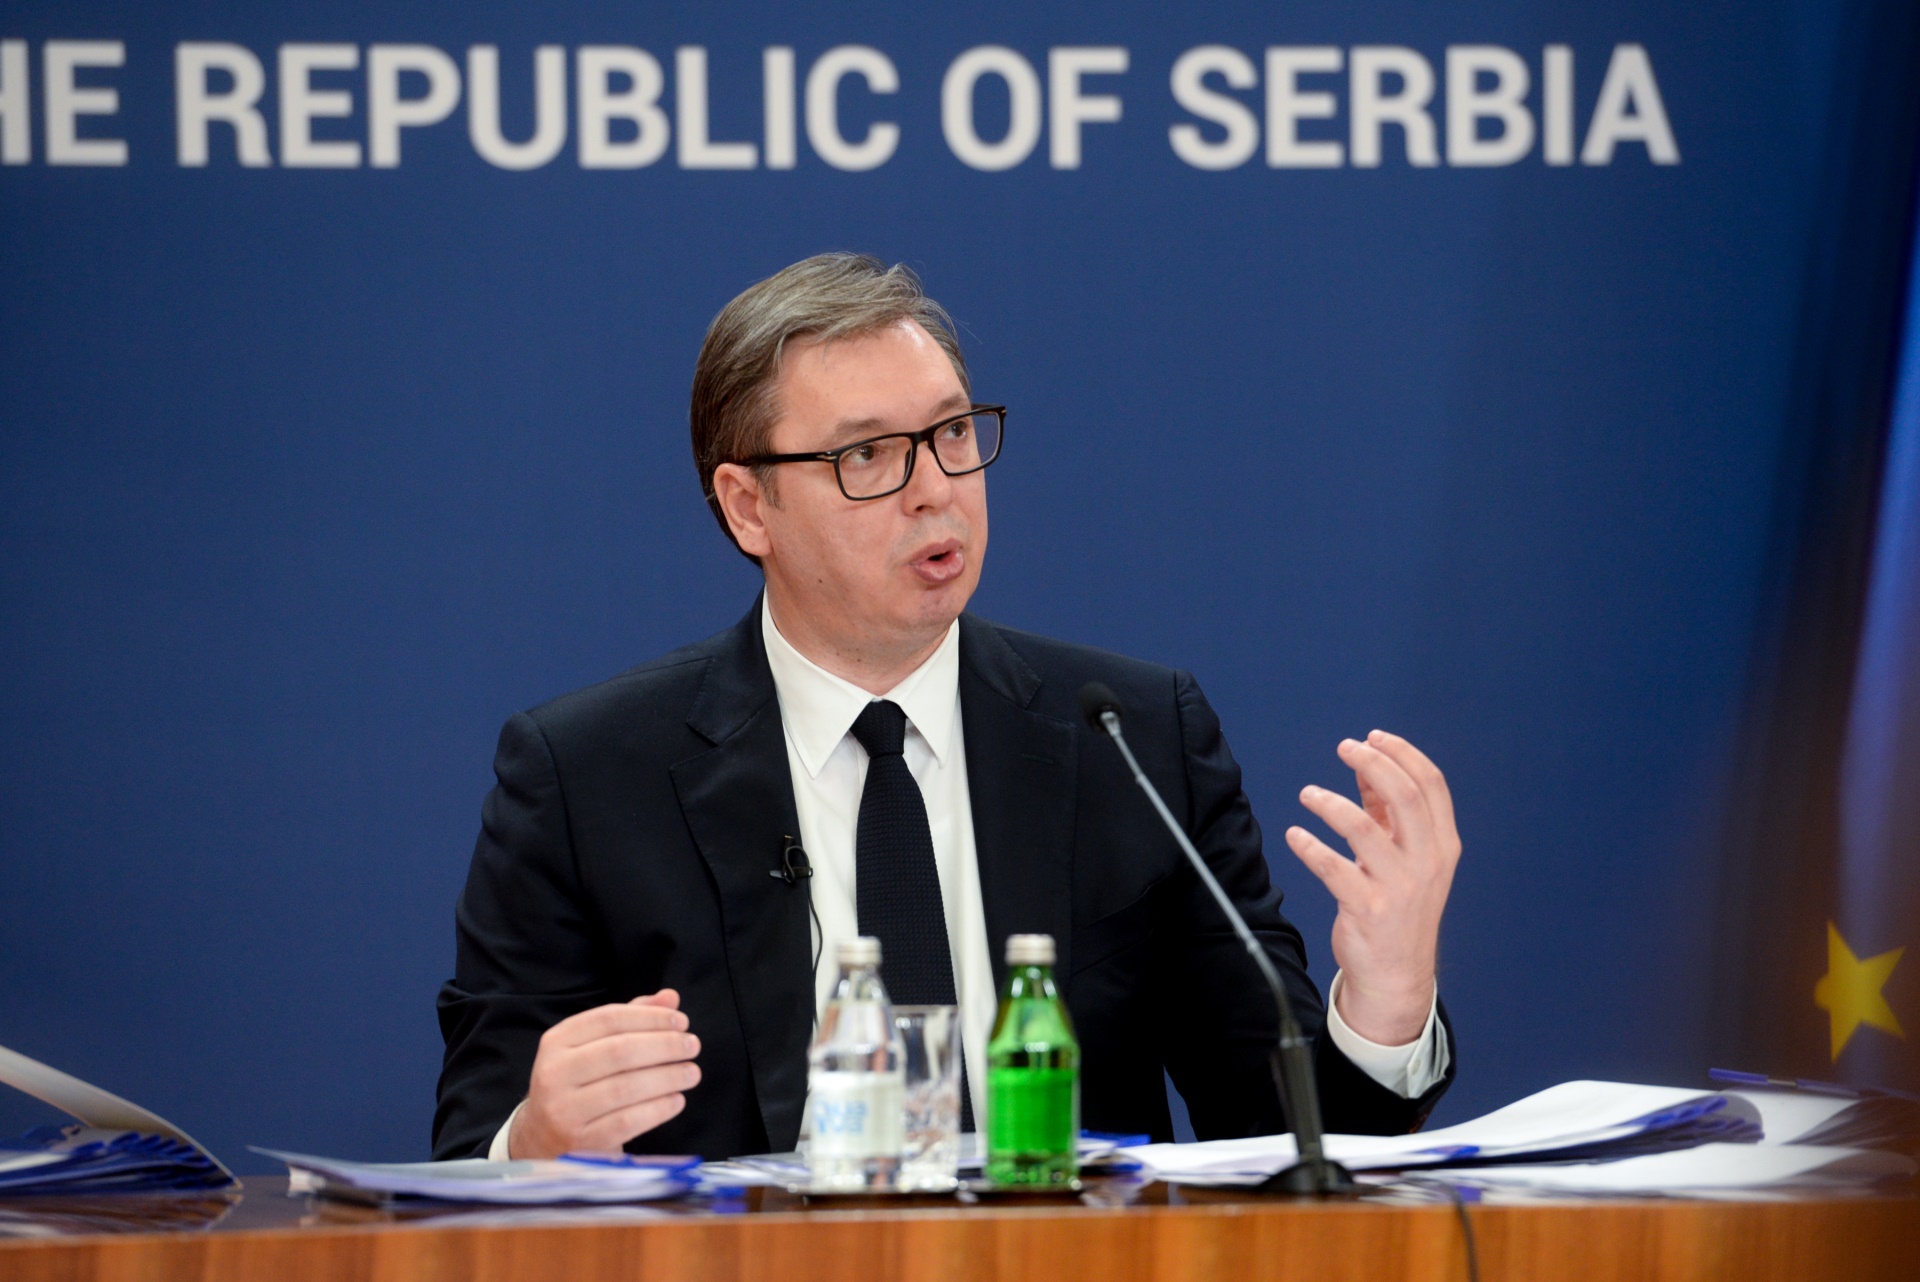 Predsednik Srbije Aleksandar Vucic porucio je danas da ce Srbija, uprkos brojevima iz istrazivanja o raspolozenju gradjana prema EU, nastaviti evropski put i biti snaznije na evropskom putu.